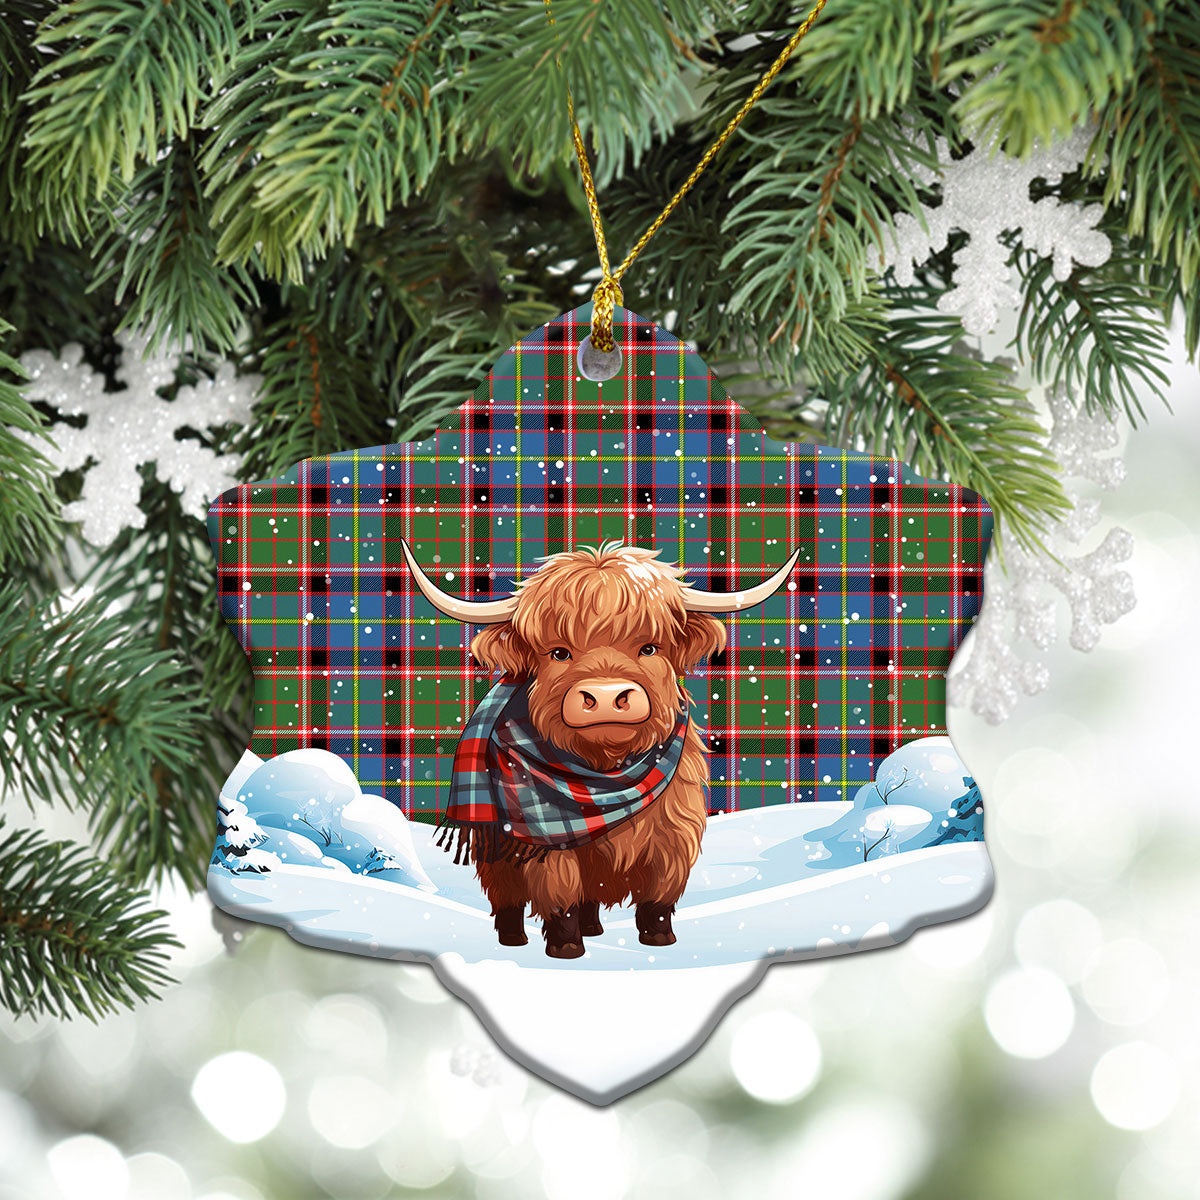 Aikenhead Tartan Christmas Ceramic Ornament - Highland Cows Snow Style